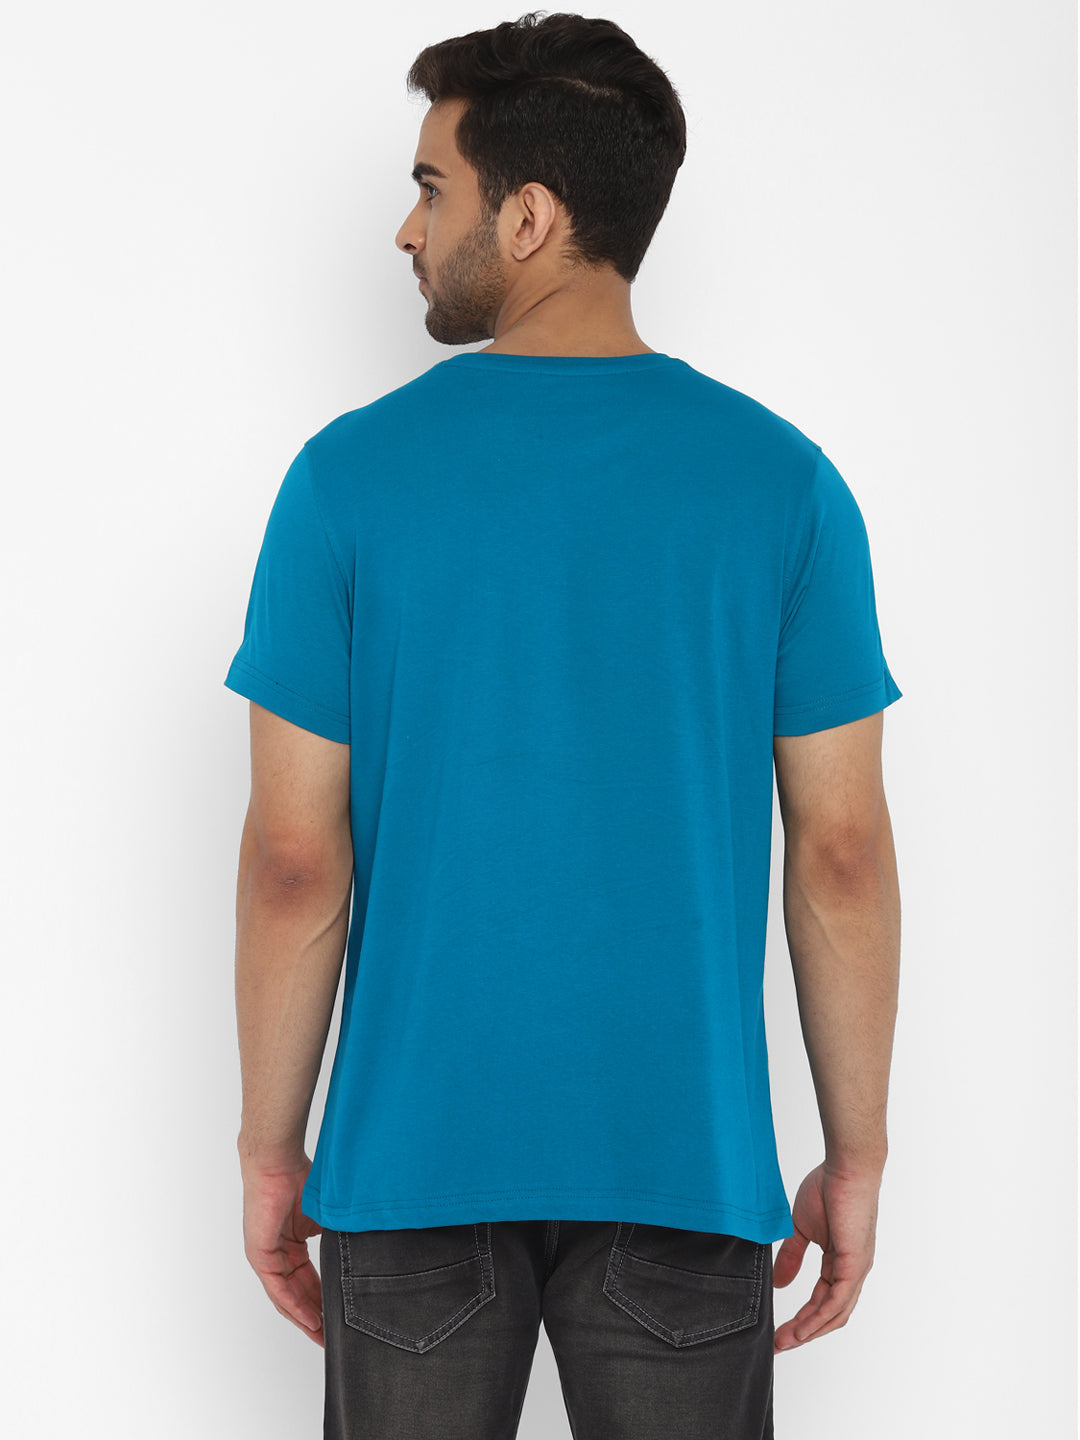 Essentials Blue Printed Round Neck T-Shirt